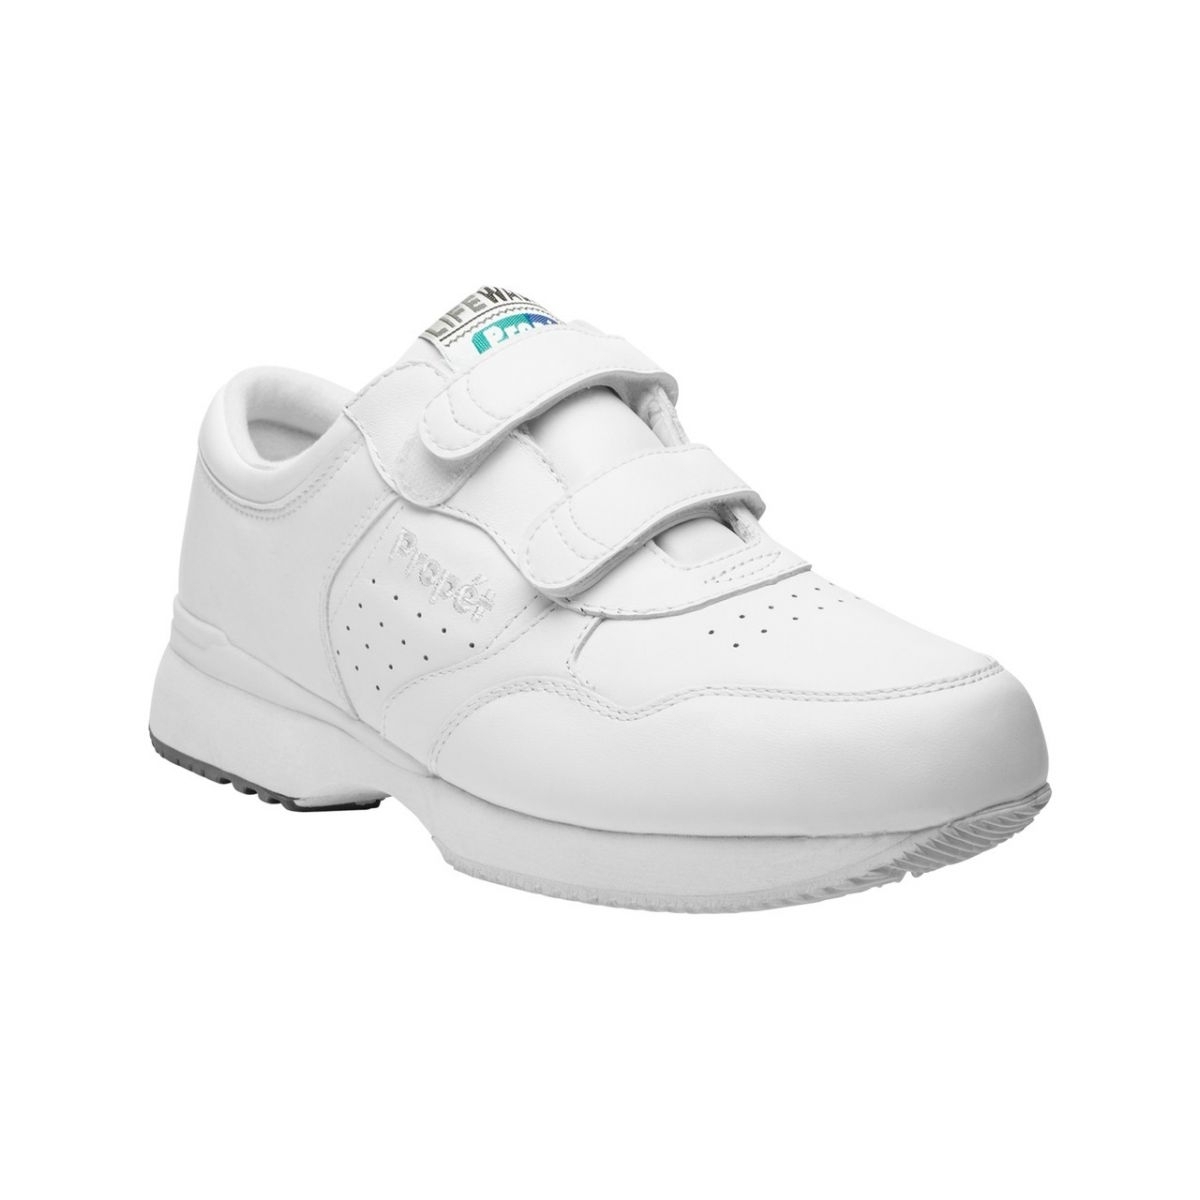 Propet Men's Life Walker Strap Shoe White - M3705WHT WHITE - WHITE, 11 X-Wide